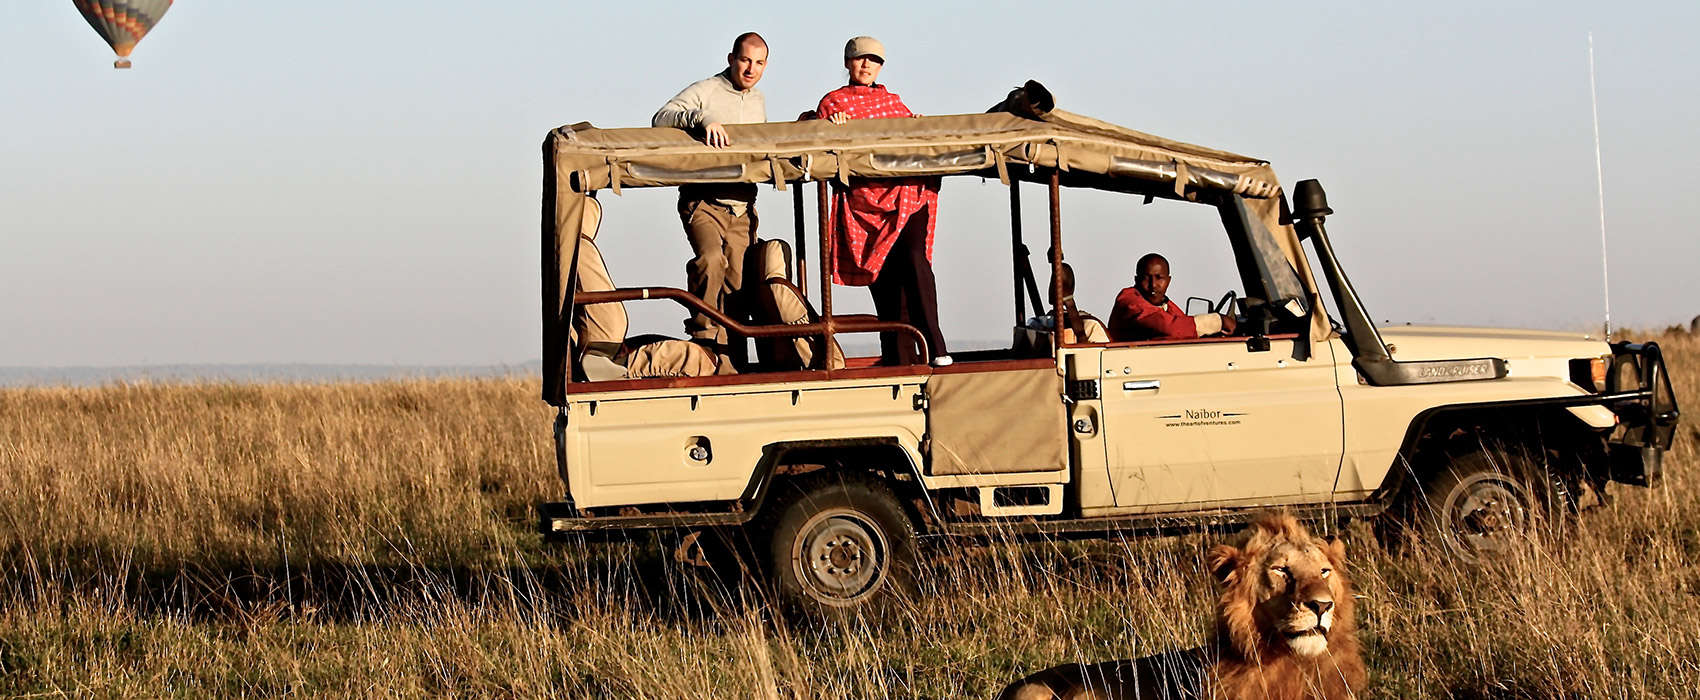 African Kenya Safari truck